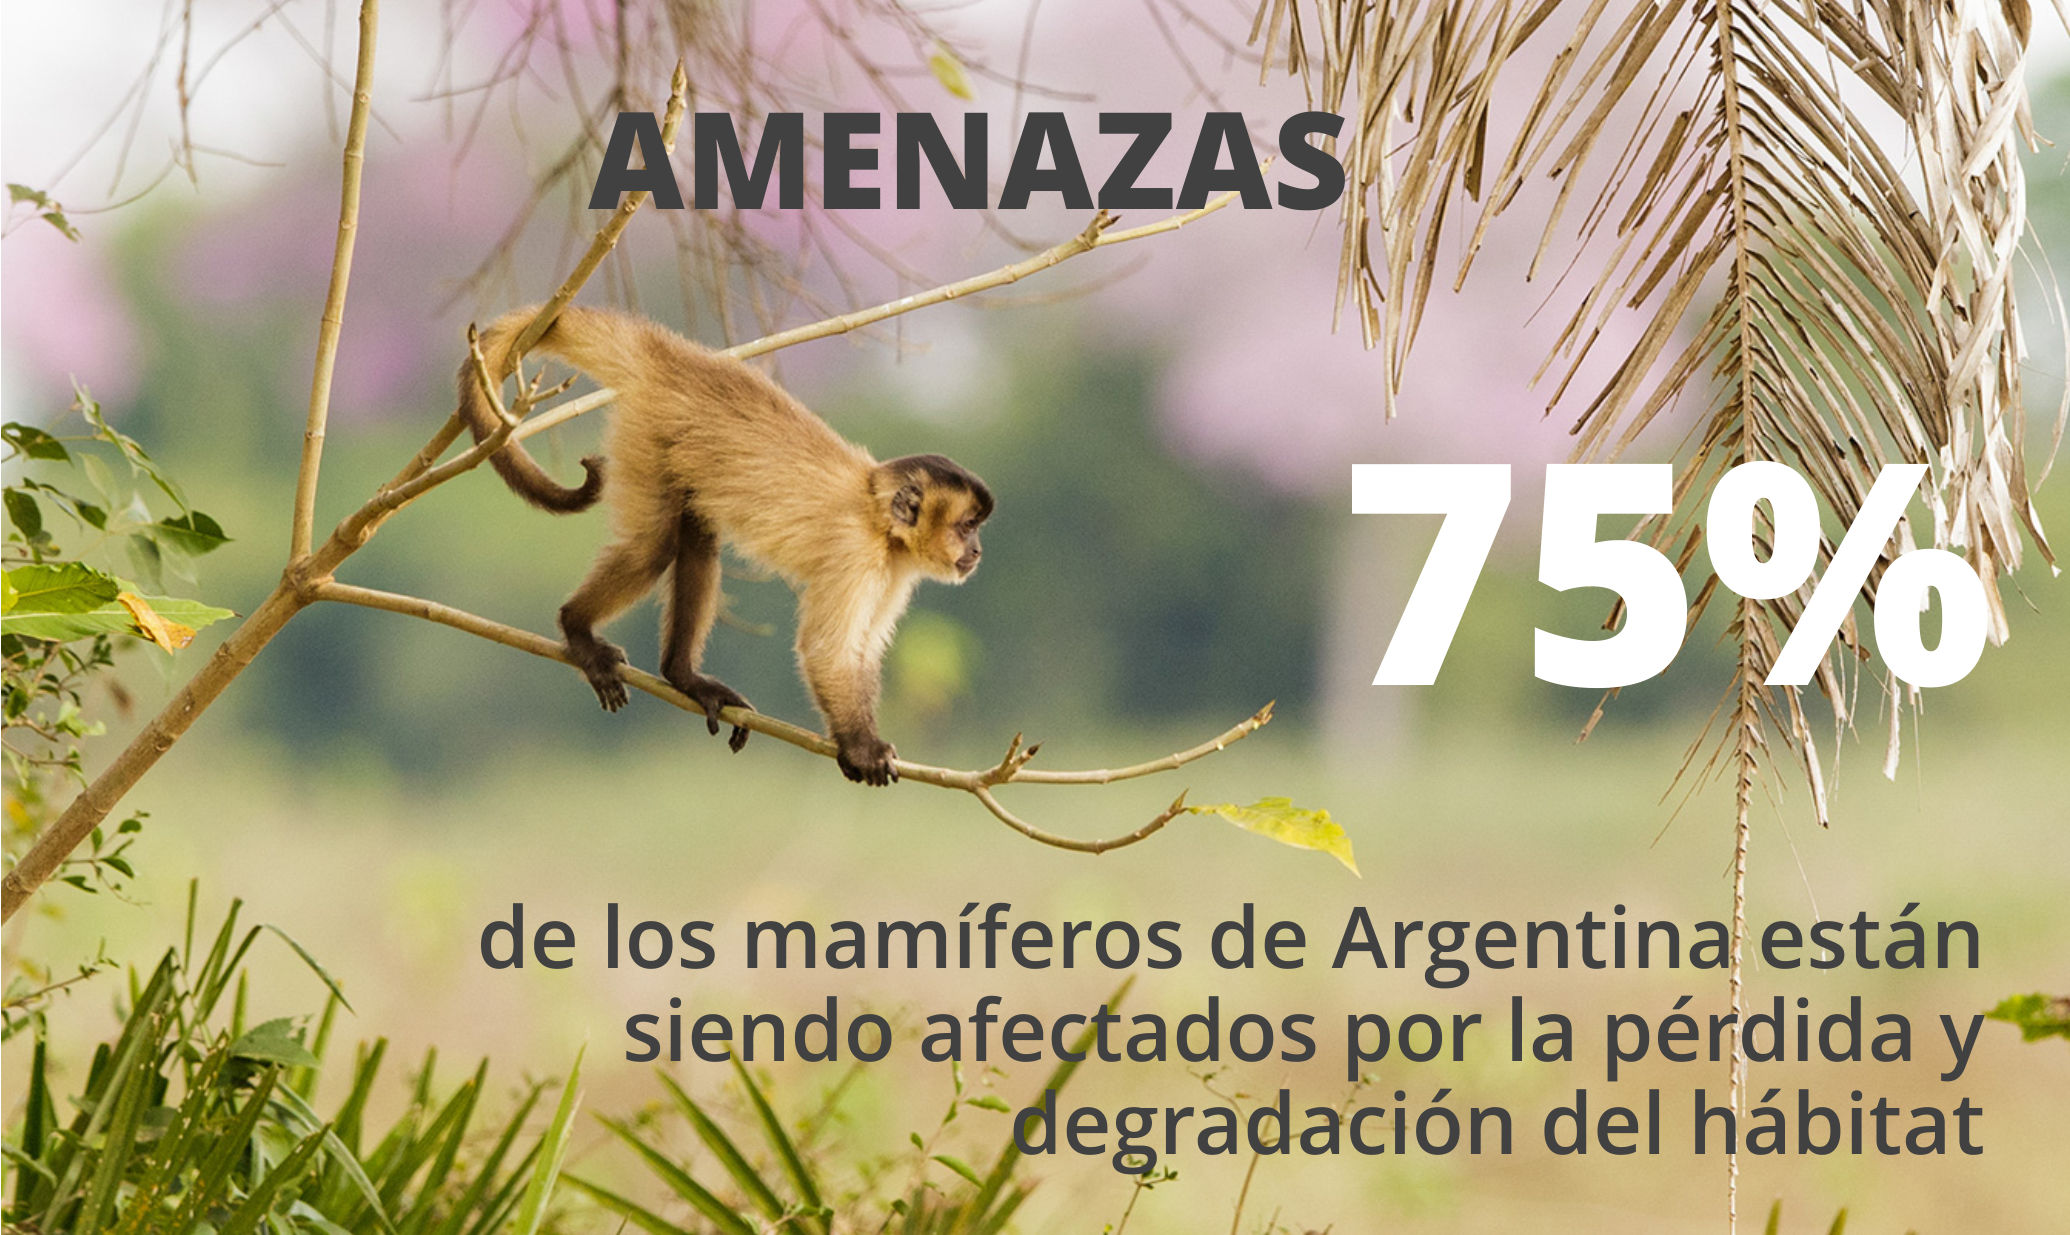 75% de los mamíferos de Argentina son amenazados por la pérdida y degradación del hábitat. Foto: Andrés Ruggeri